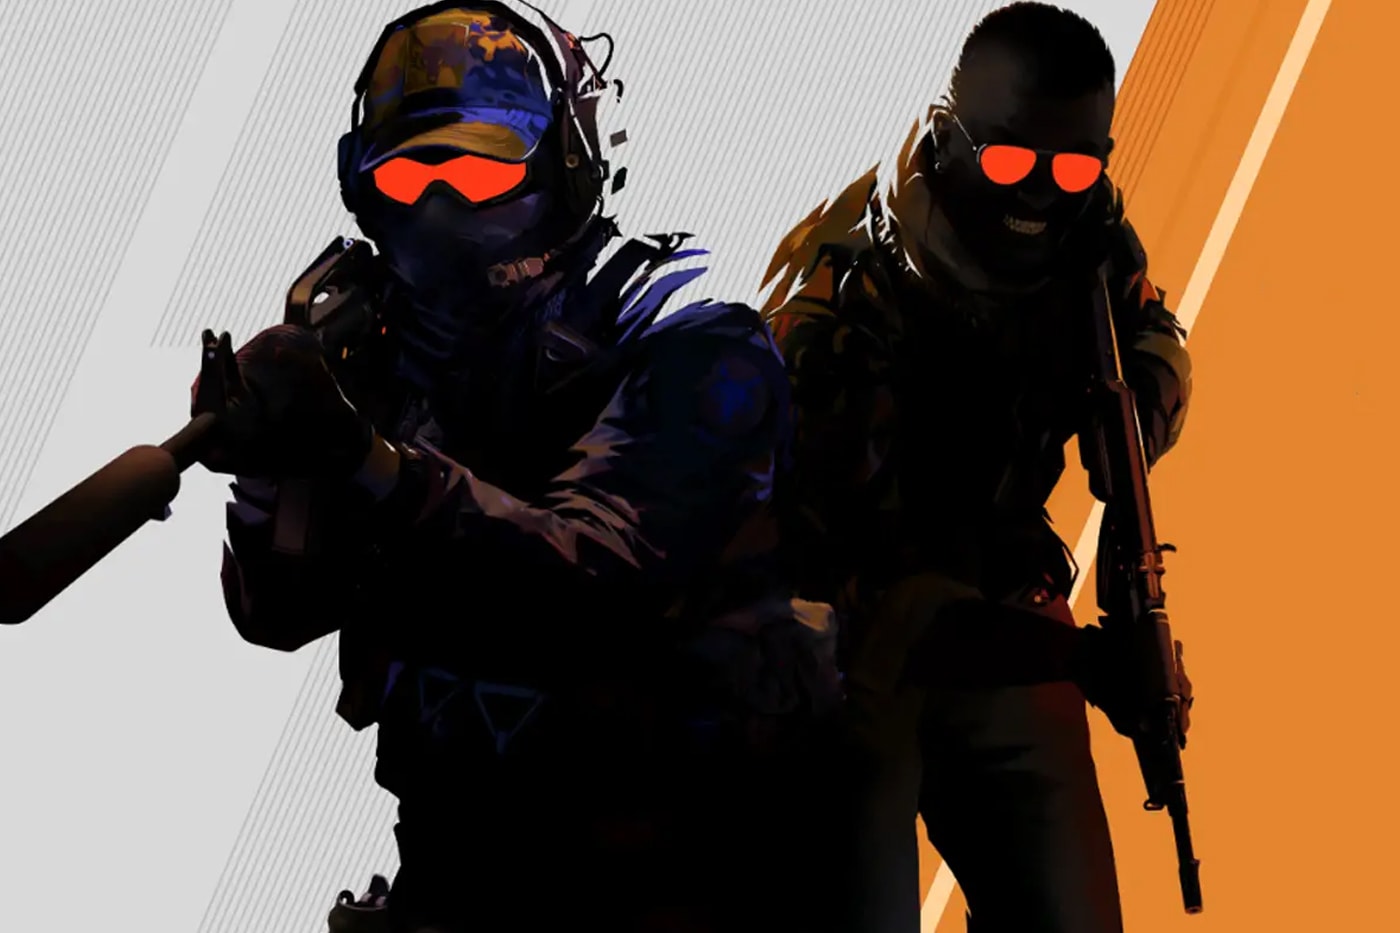 經典射擊遊戲《絕對武力》全新第二代《Counter-Strike 2》正式發表